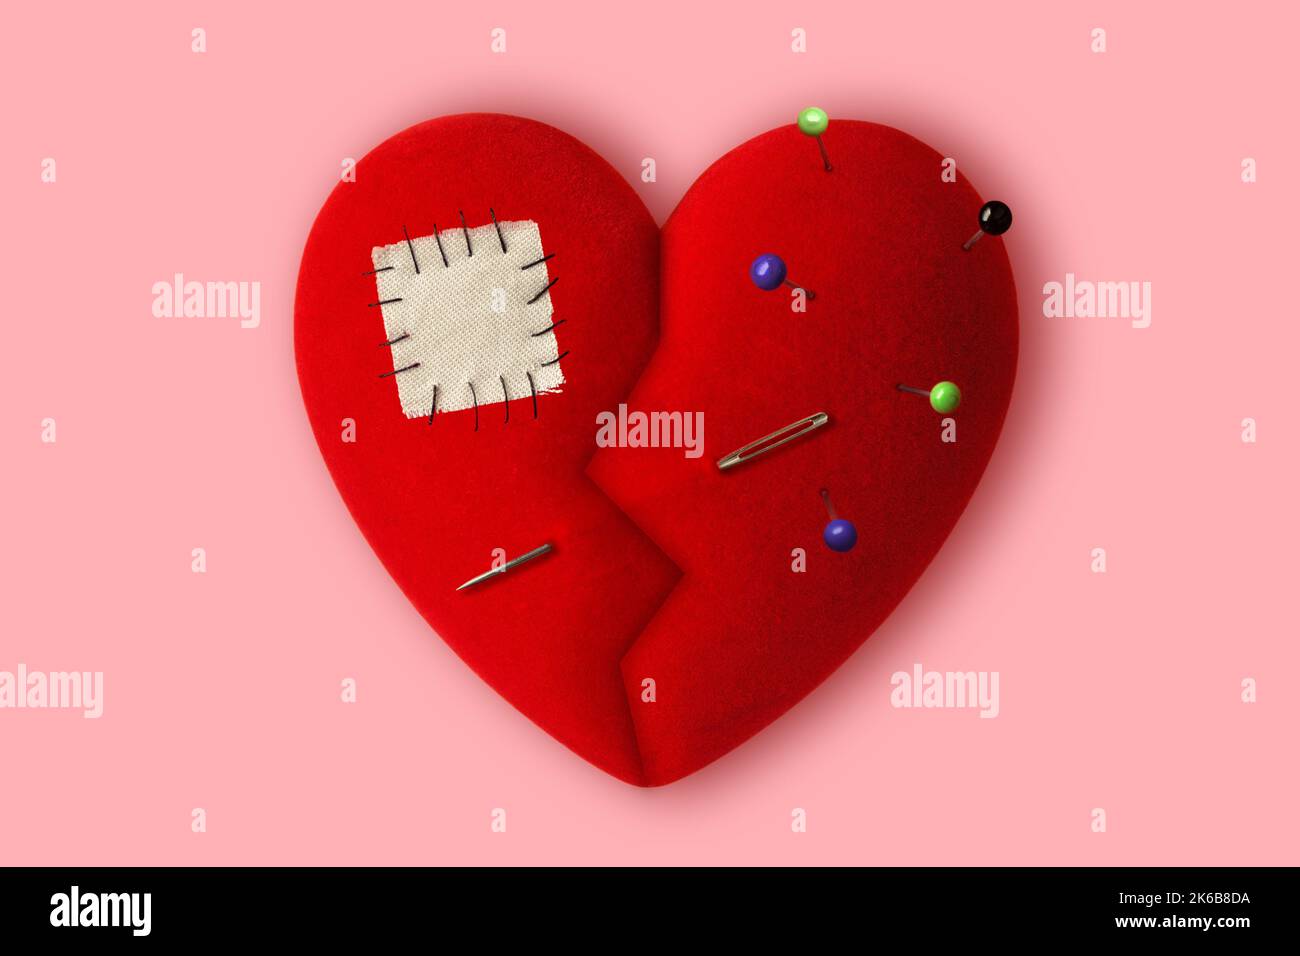 Gebrochenes Herz mit Nadeln, Nähnadel und Patch auf rosa Hintergrund - Konzept der Heilung eines gebrochenen Herzens Stockfoto